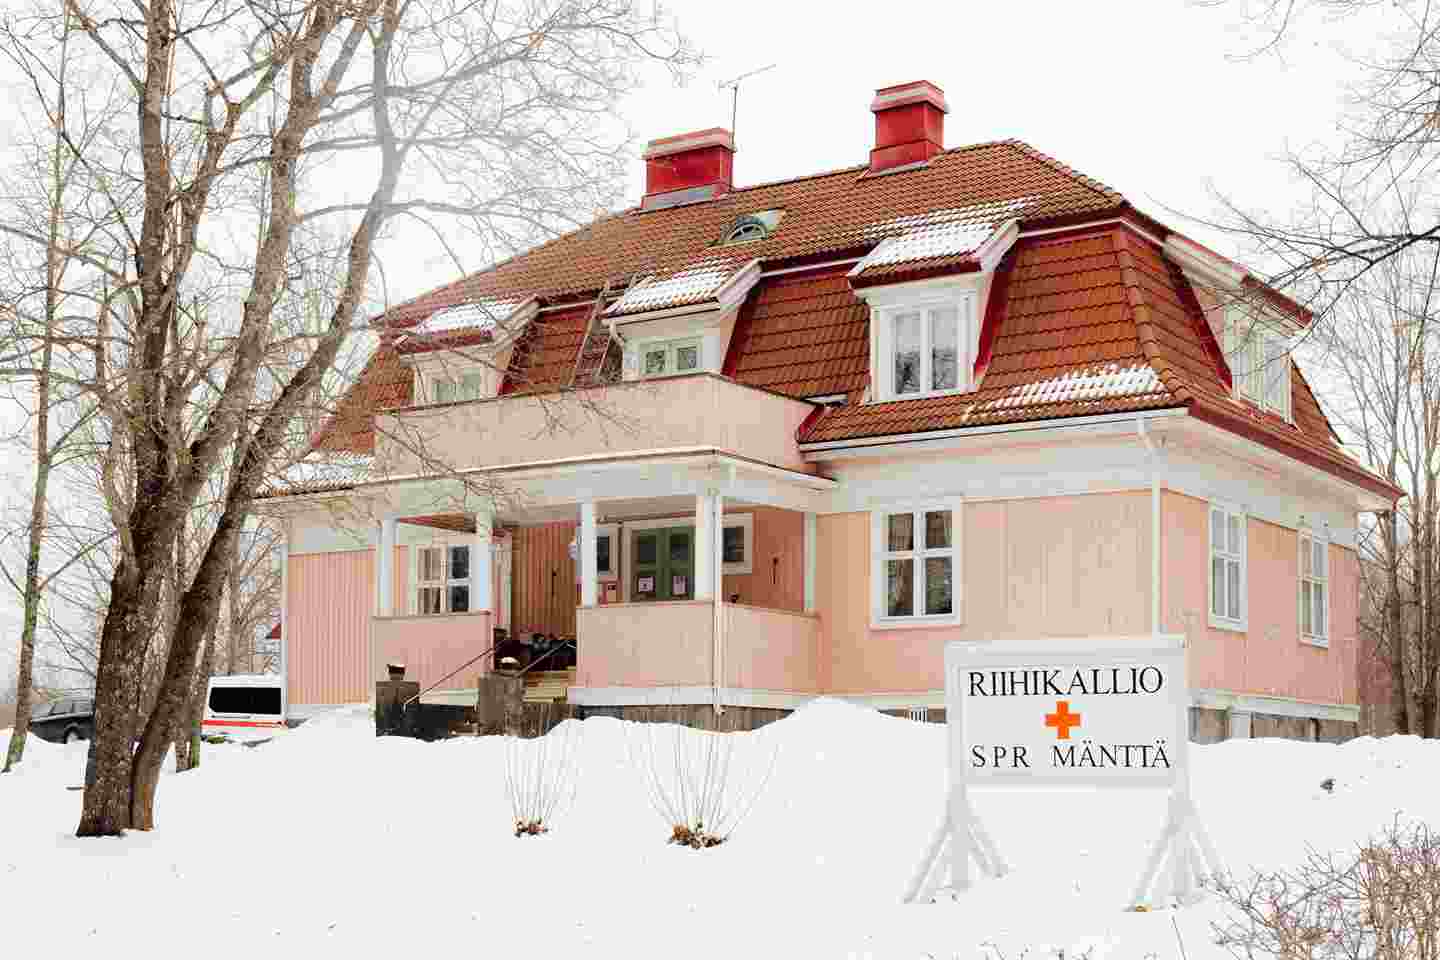 Vaaleanpunainen puutalo, jonka edessä olevassa kyltissä lukee "Riihikallio, SPR Mänttä".